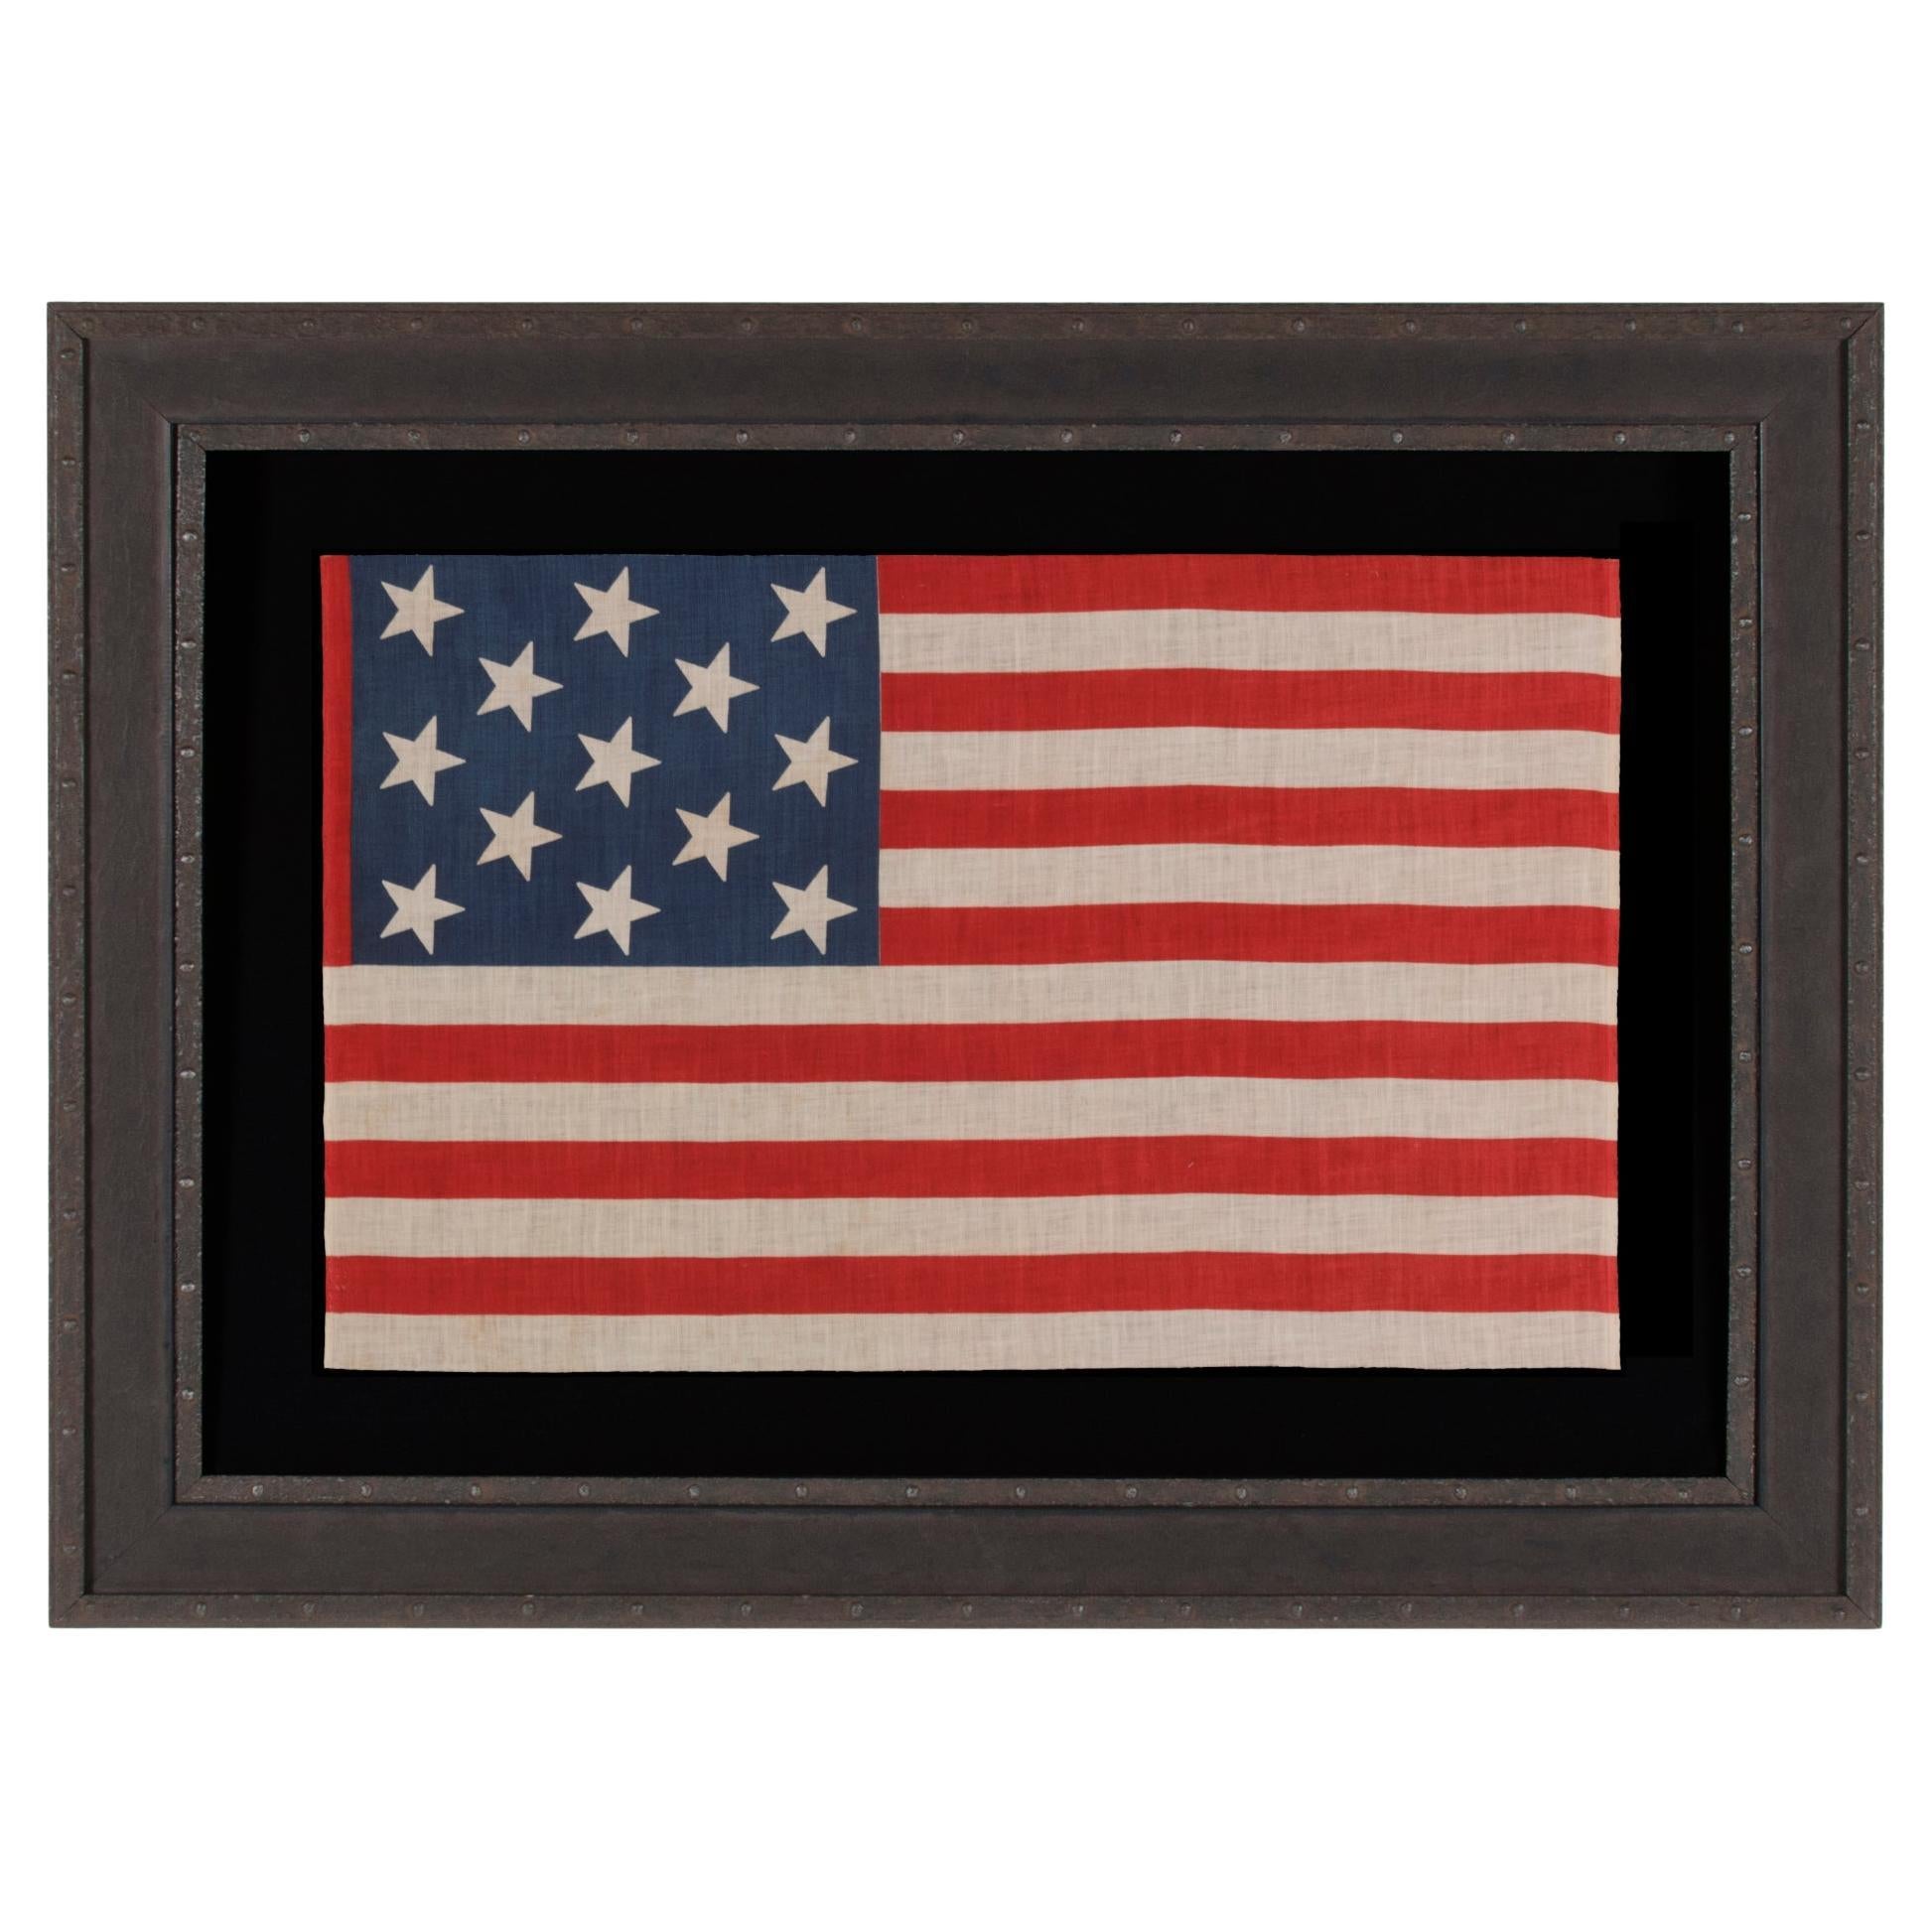 13 Star Antique American Parade Flag, Extremely Scarce, circa 1876-1889